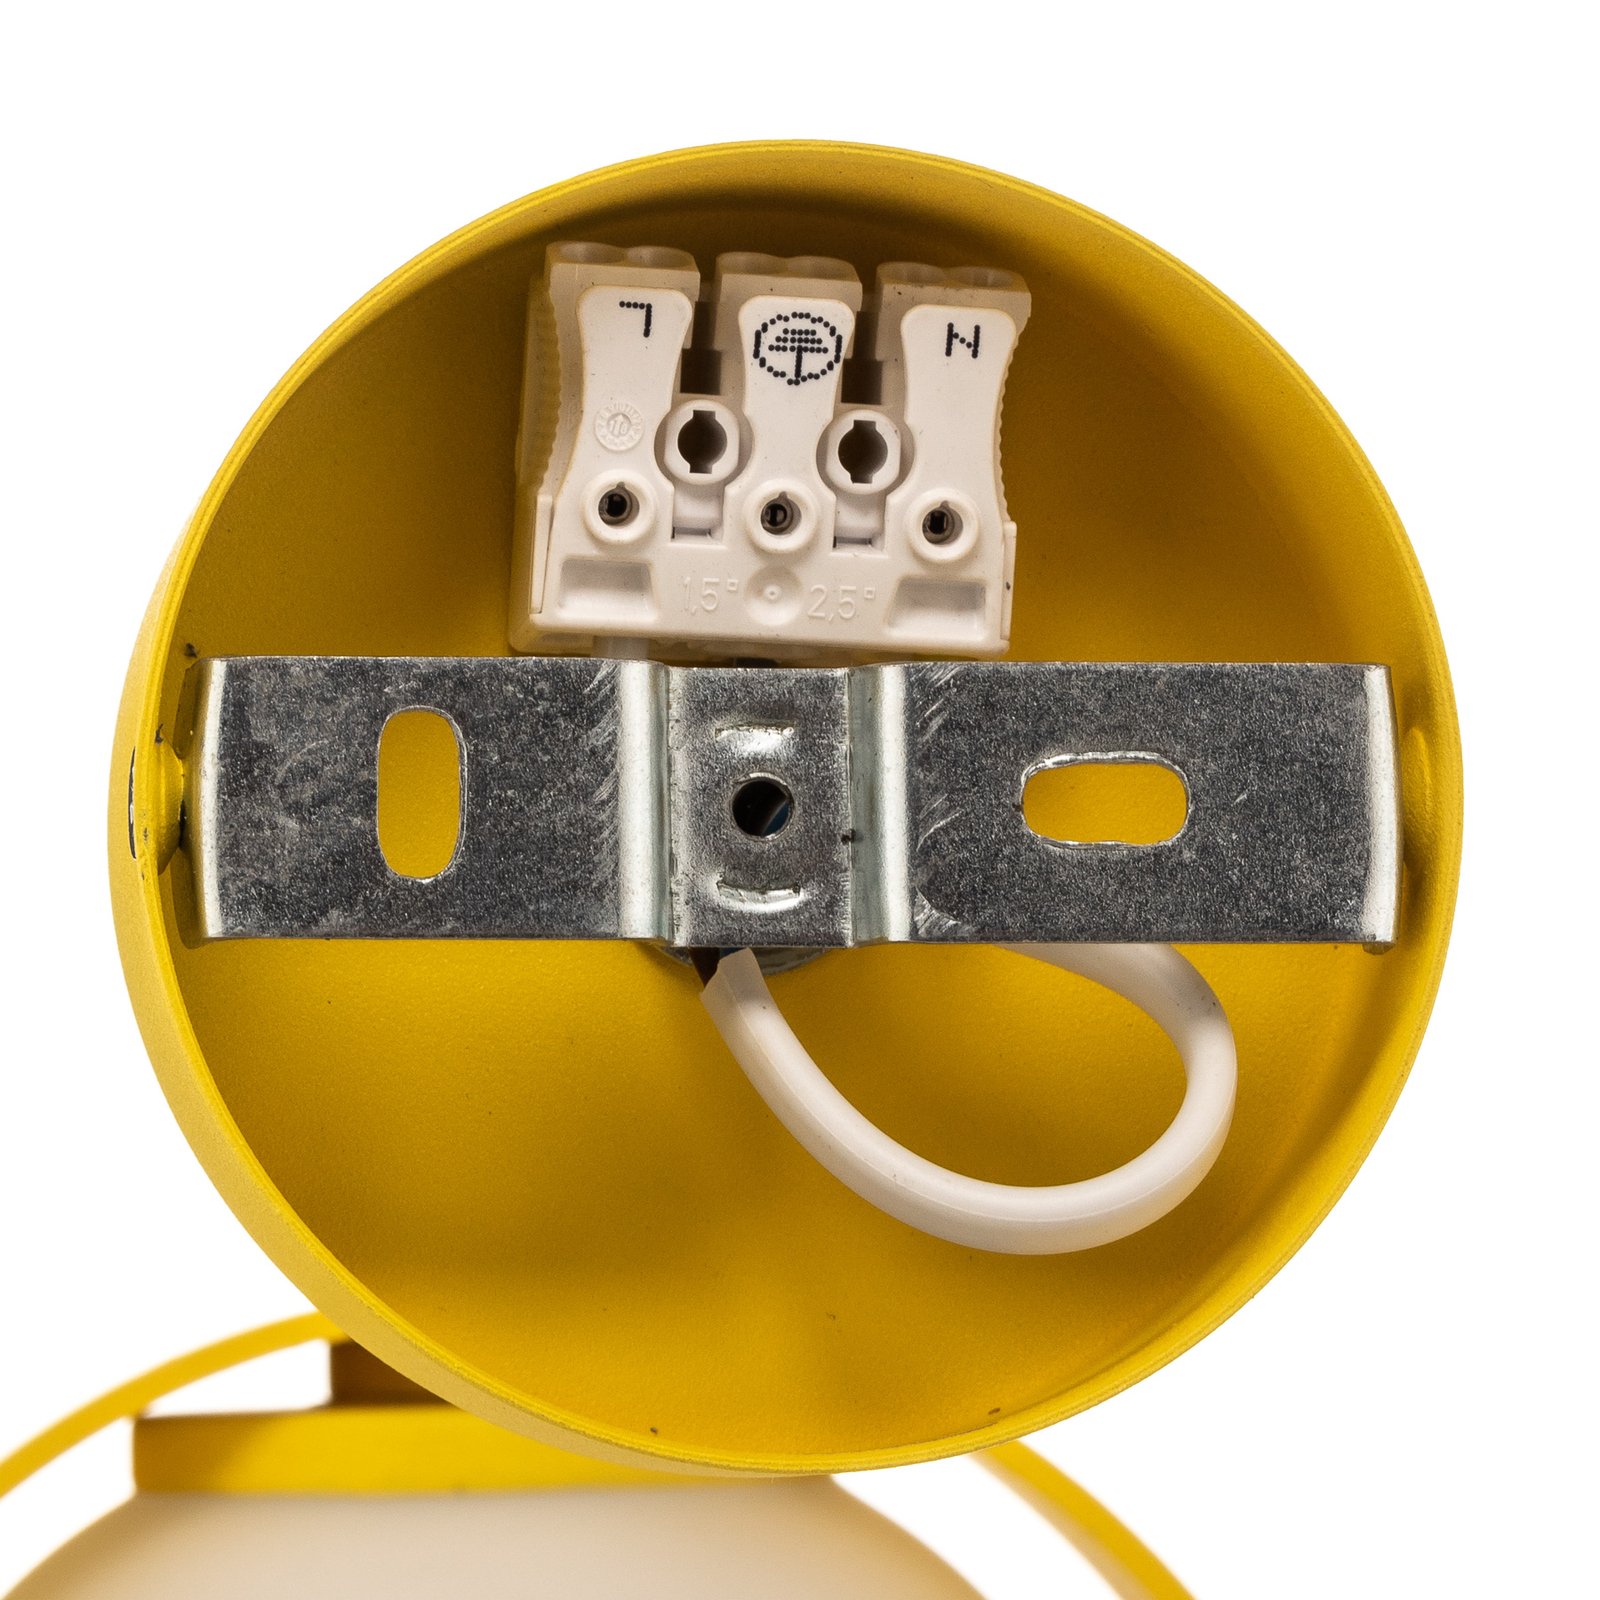 Taklampa Mado av stål, gul, 1 lampa